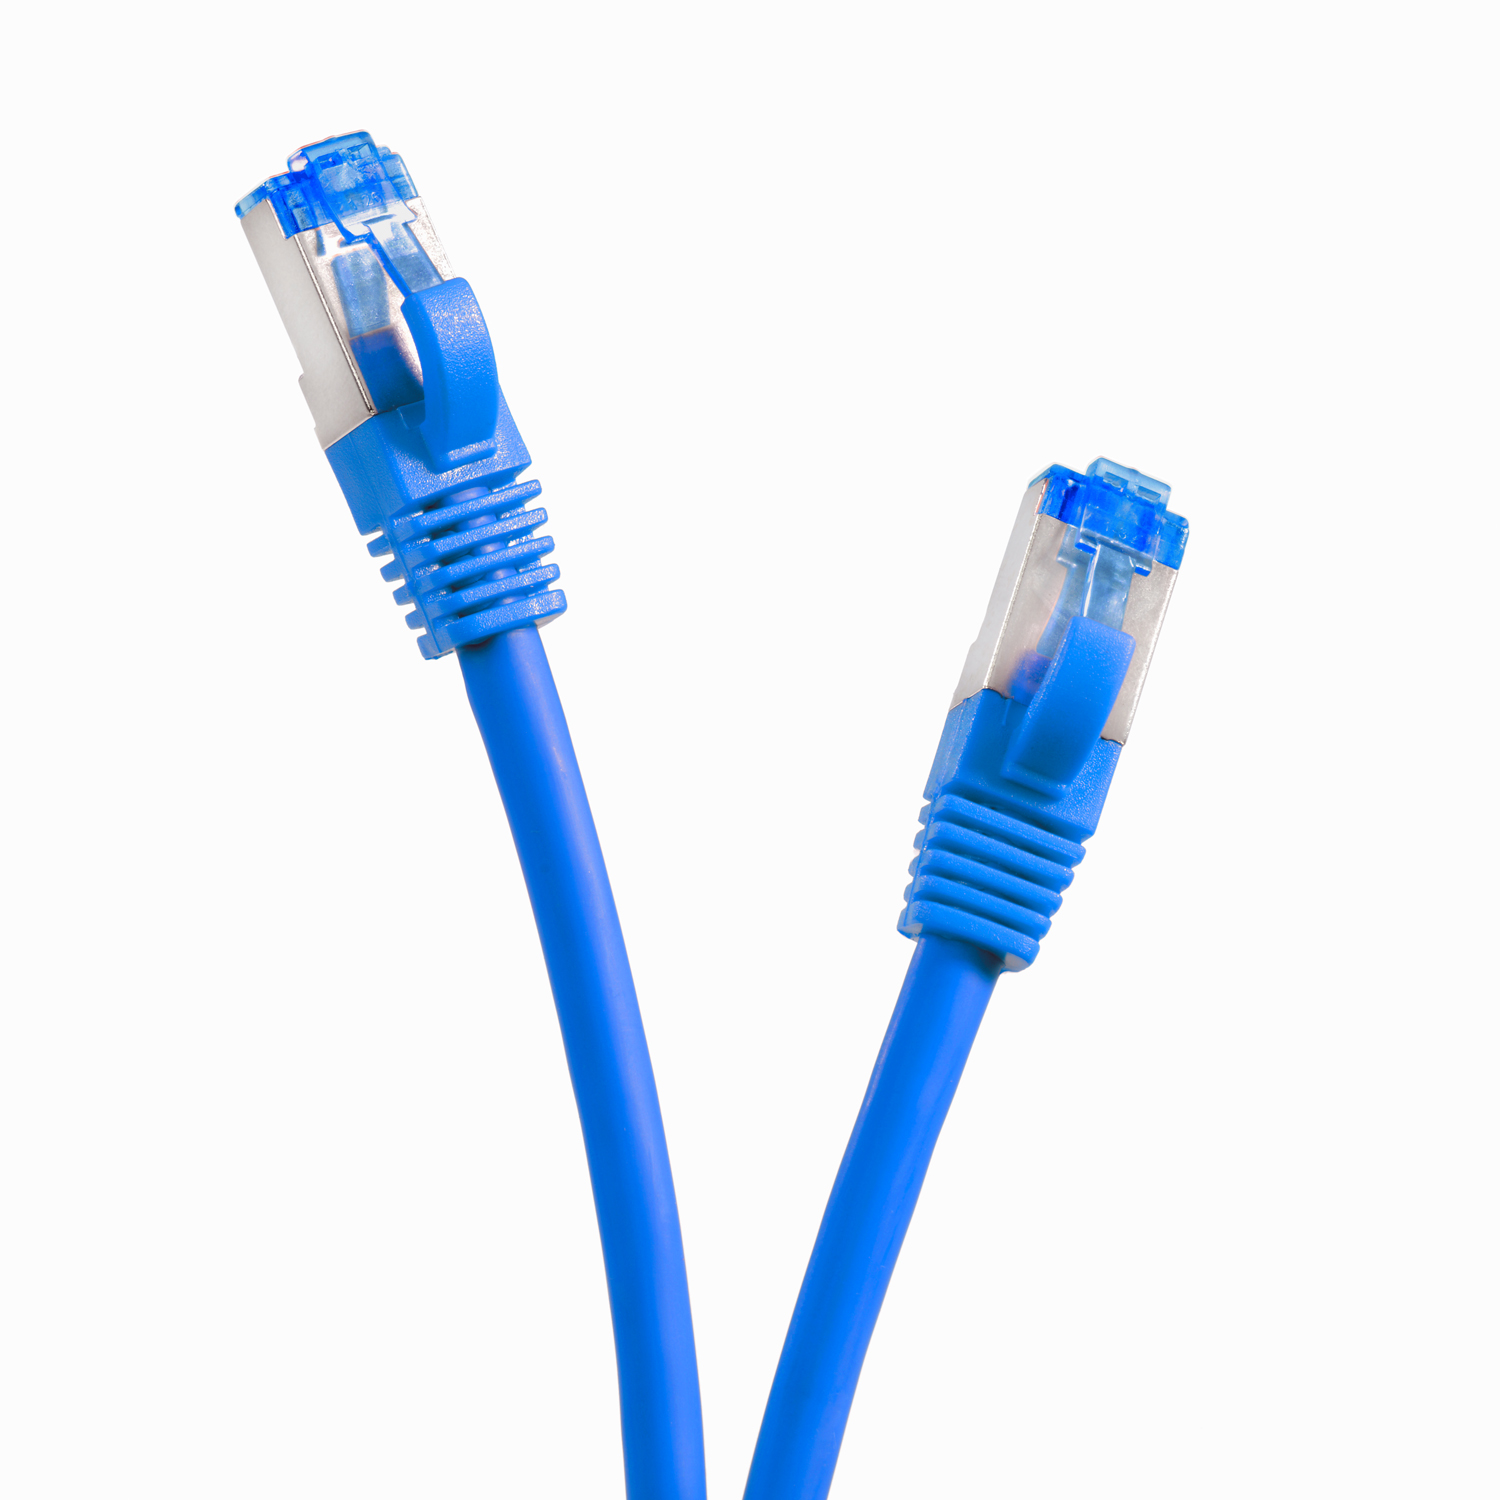 TPFNET 15m Patchkabel / Netzwerkkabel, 15 m 10GBit, S/FTP Netzwerkkabel blau